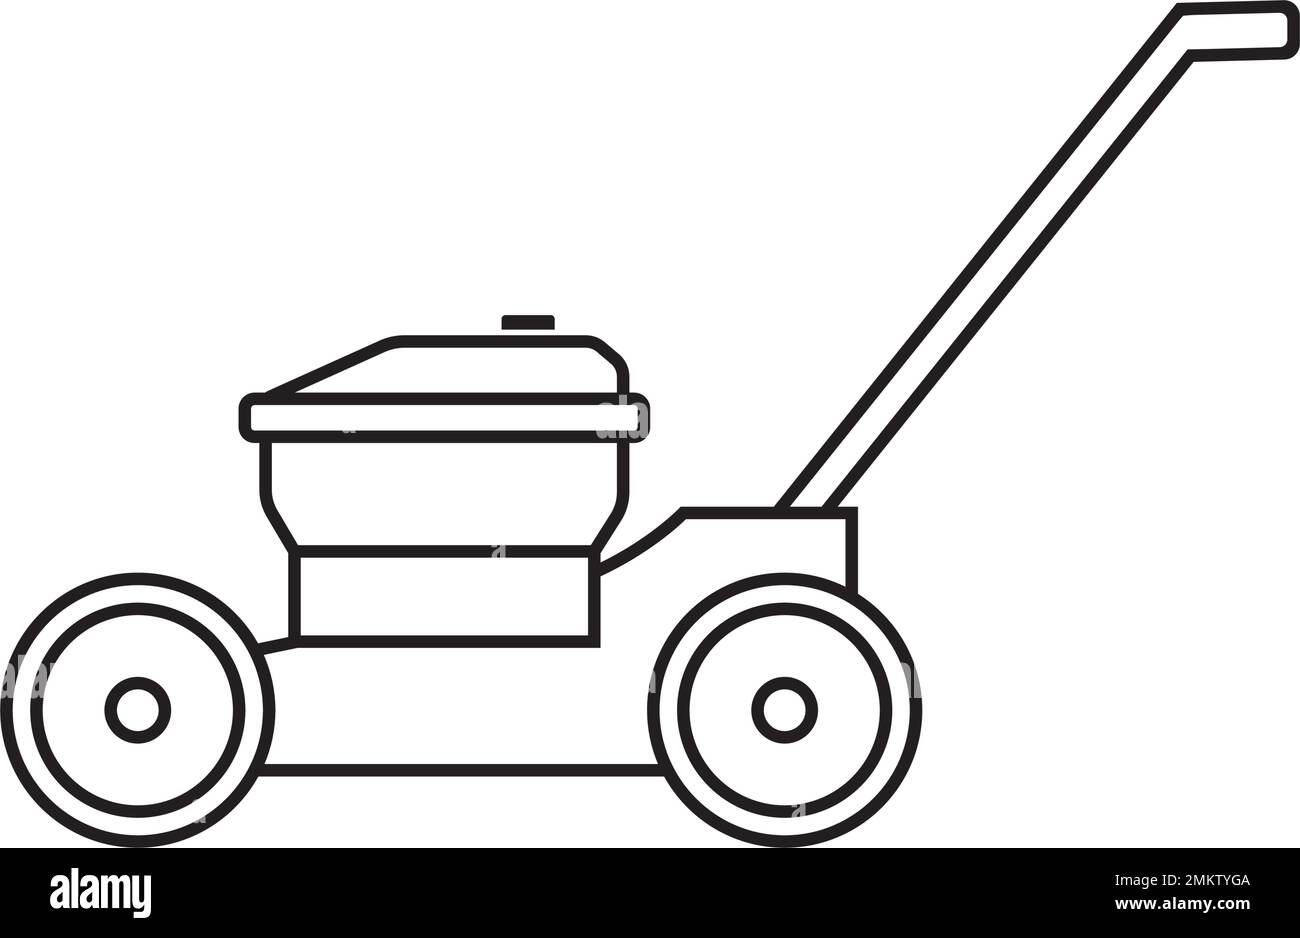 Das Vektorsymbol des Rasenmähers zeigt ein einfaches Design Stock Vektor